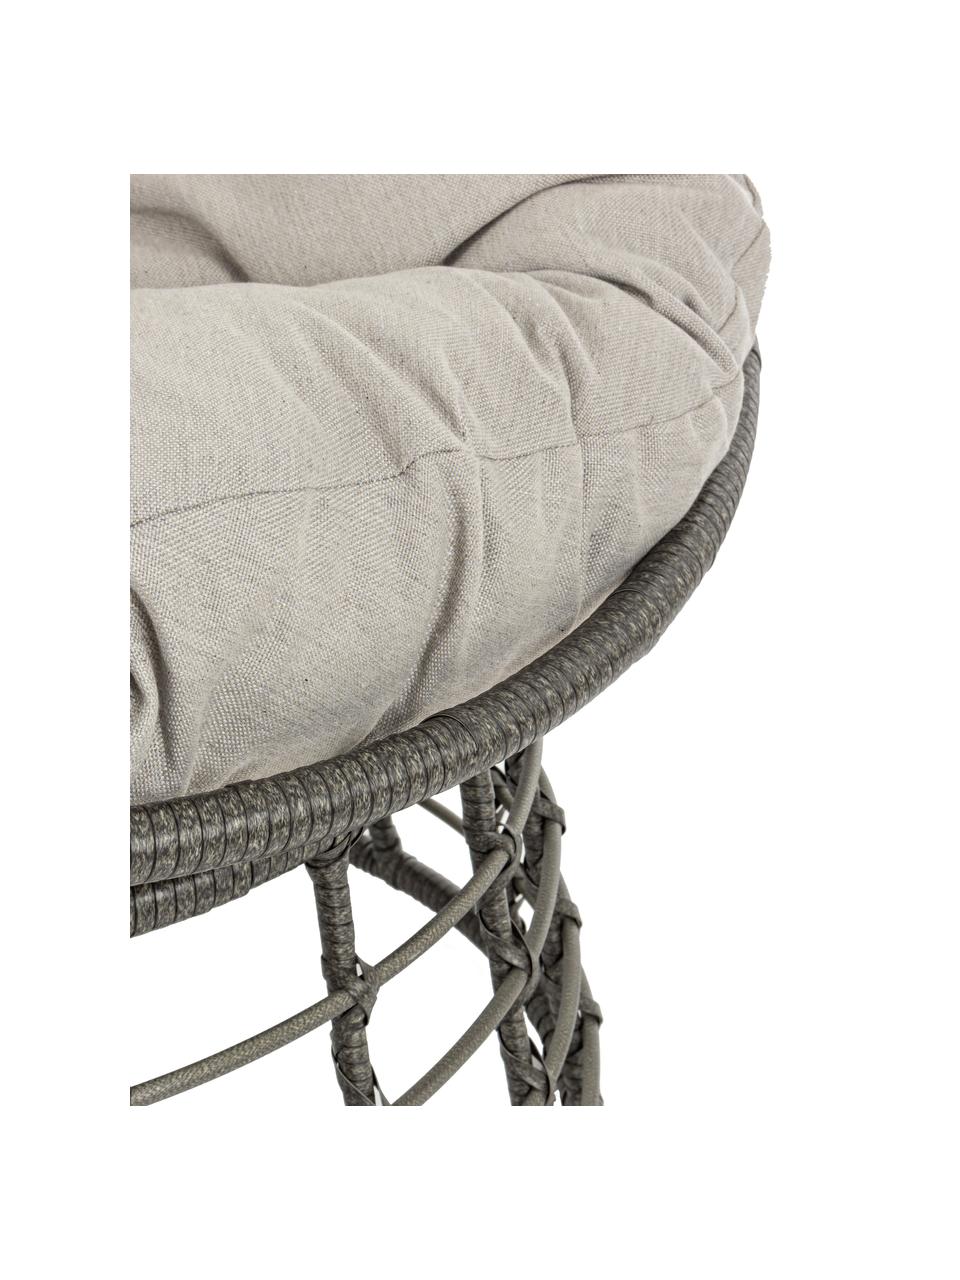 Fotel papasan z tworzywa sztucznego z poduszką na siedzisko Molly, Tapicerka: poliester, Szary, jasny szary, Ø 92 x W 78 cm